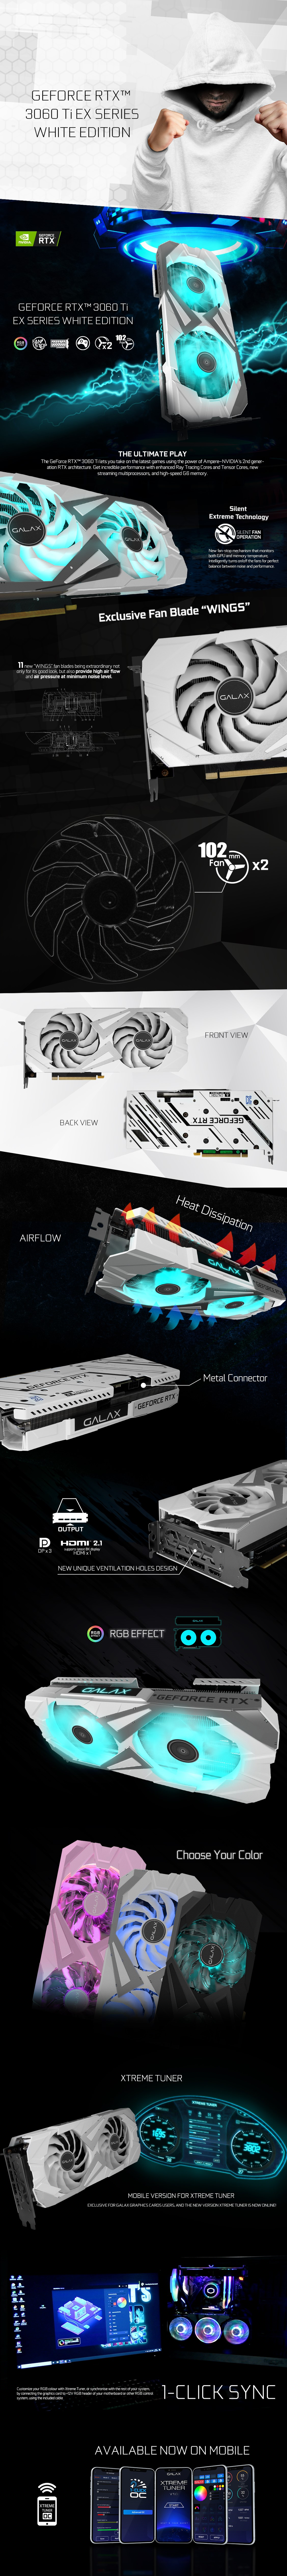 GALAX GeForce RTX™ 3060 Ti GDDR6X 1-Click OC Plus (Updated Ver.) - 1-Click  OC Series - Graphics Card